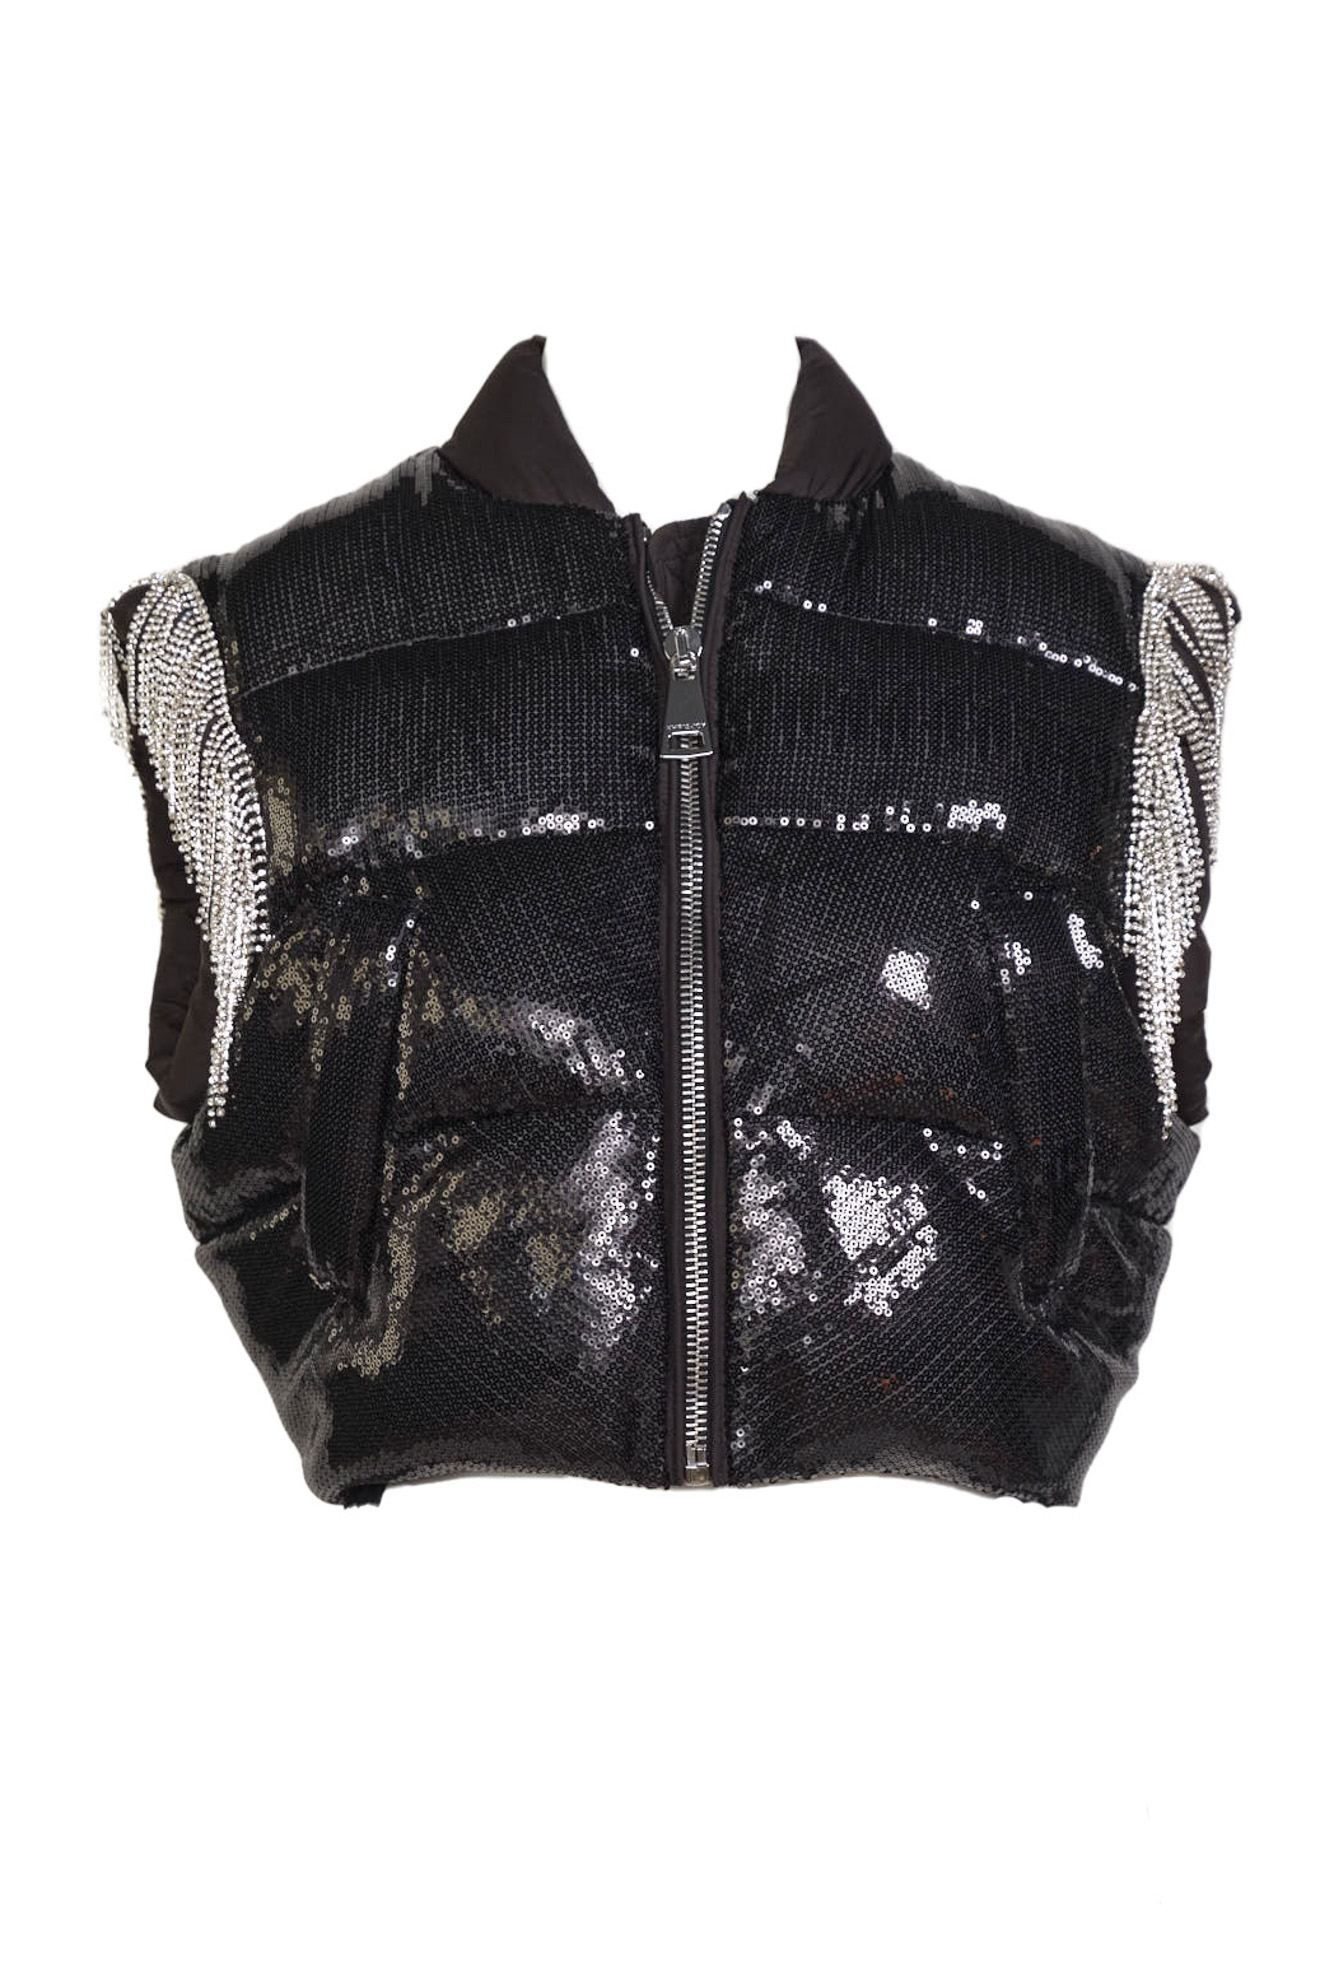 Louis Vuitton Women's Zip Up Gilet Vest Studded Leather Black